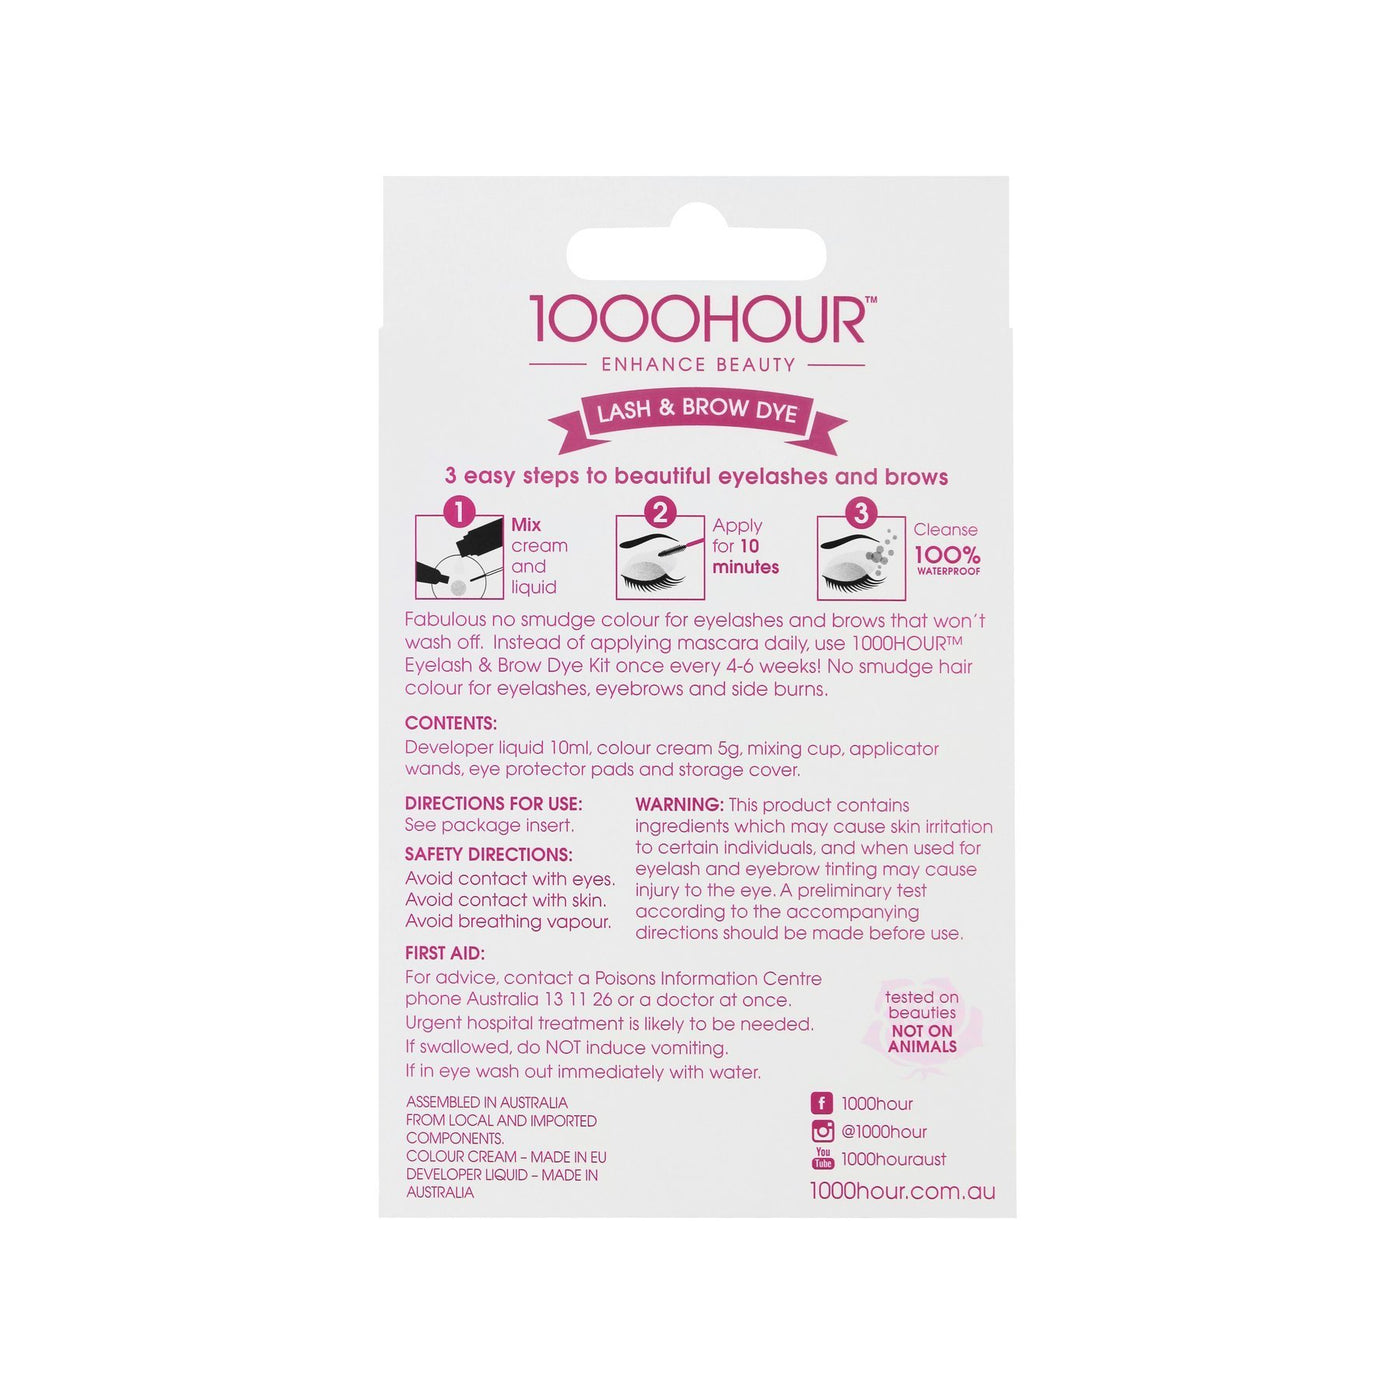 1000Hour Lash & Brow Dye Kit Packaging